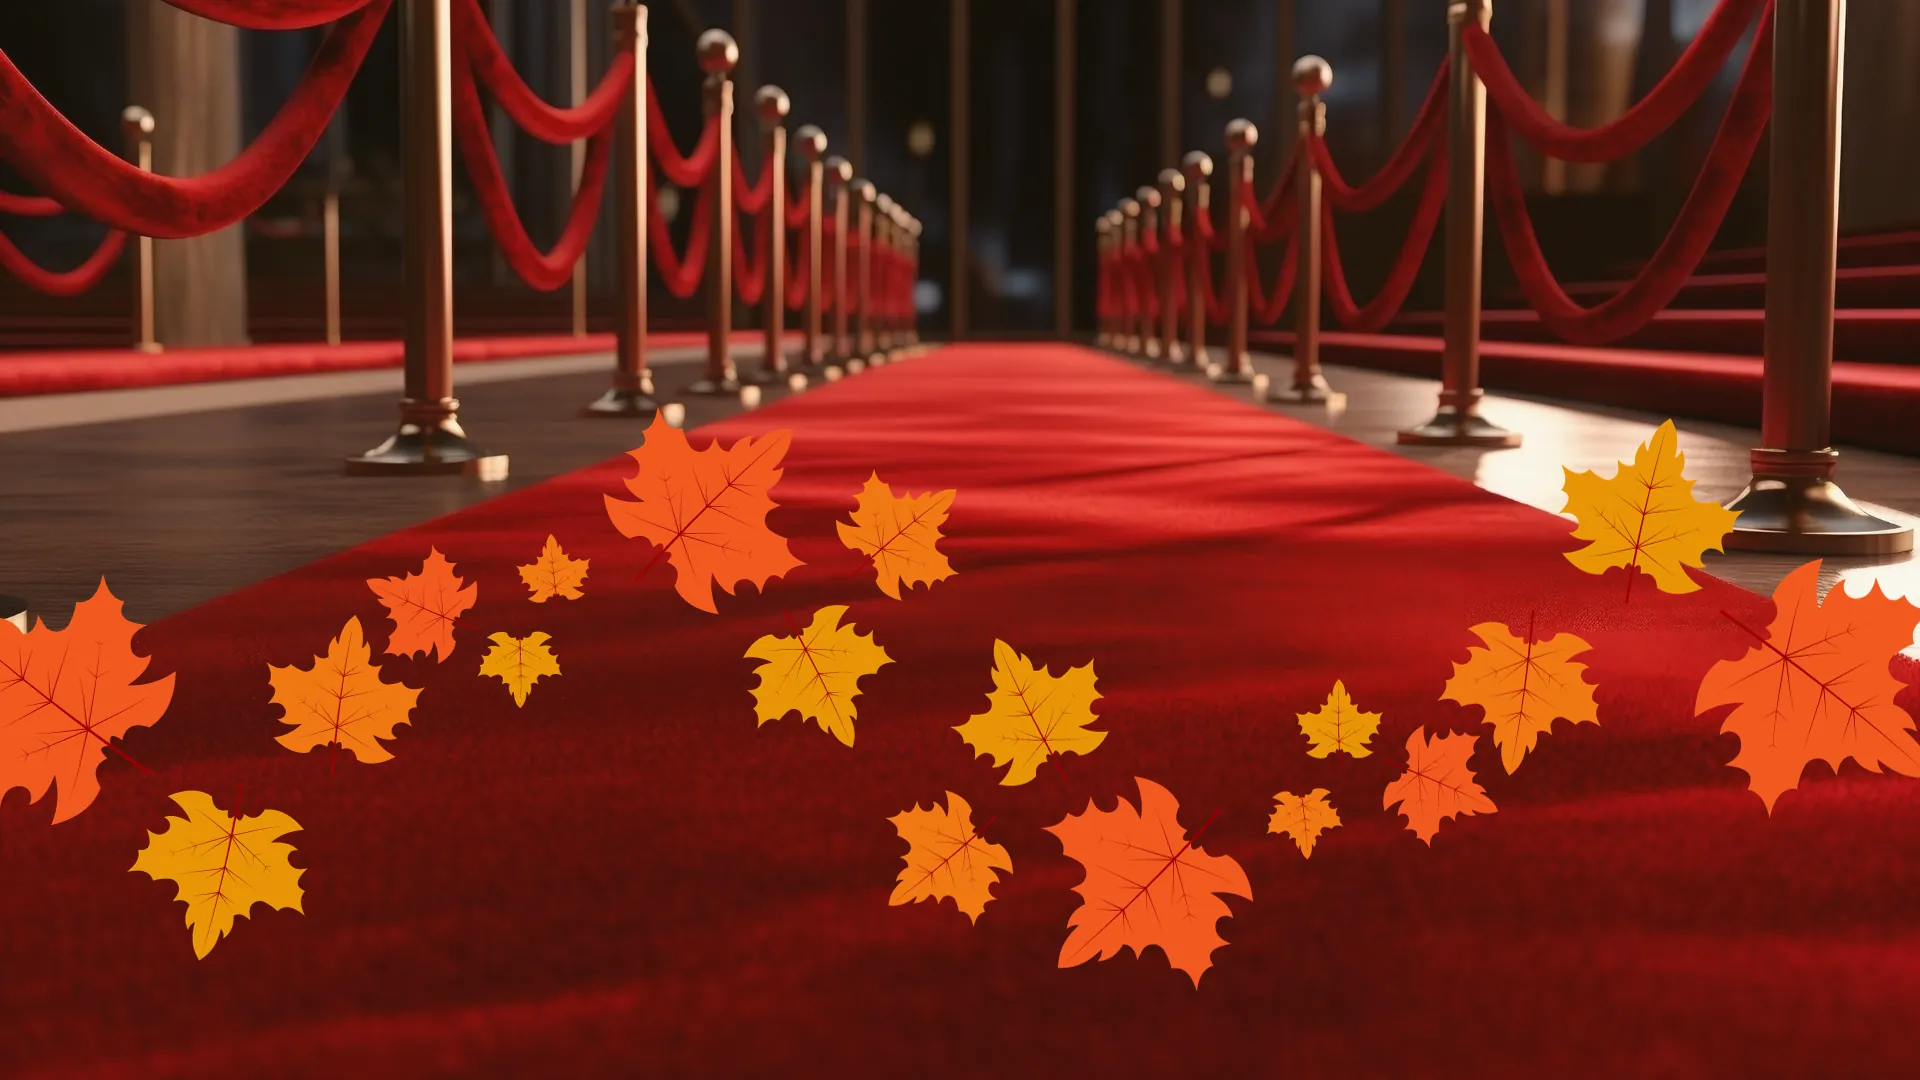 Herbst Roter Teppich - Musicalreisen mit Herbstrabatt buchen